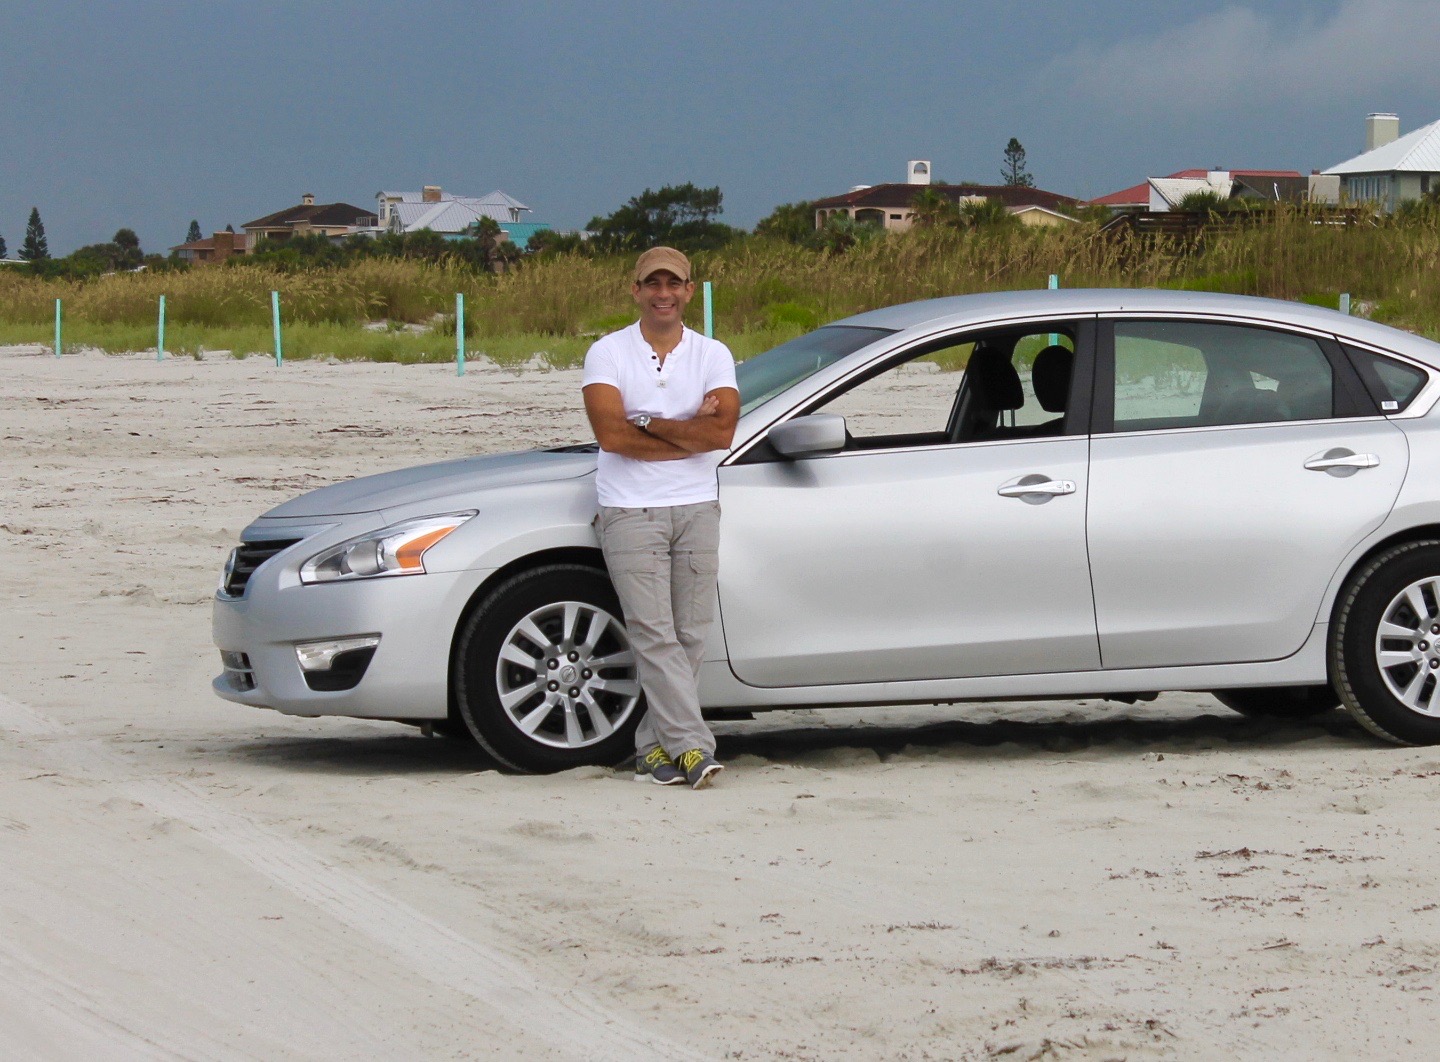 Latino man with car at the beach